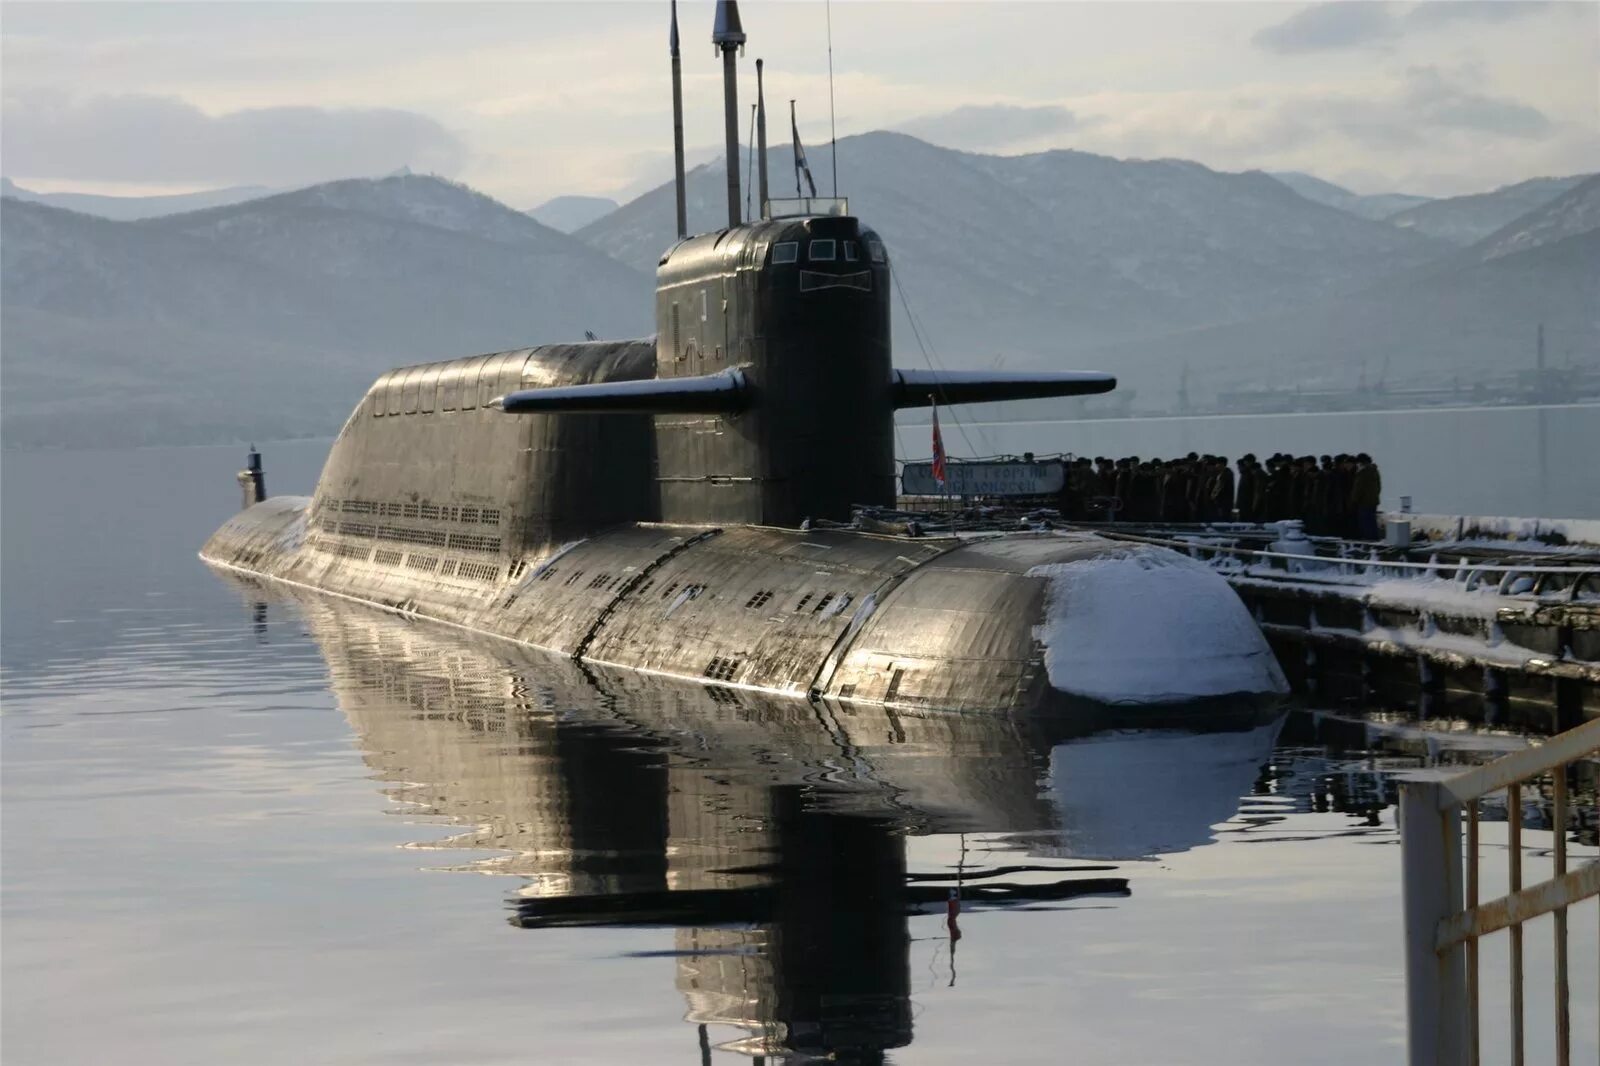 Подводная лодка 667бдр кальмар. Подводные лодки проекта 667бдр «кальмар». Подводные лодки проекта 667бдрм «Дельфин». БДРМ 667 проект подводная лодка. Пл ка